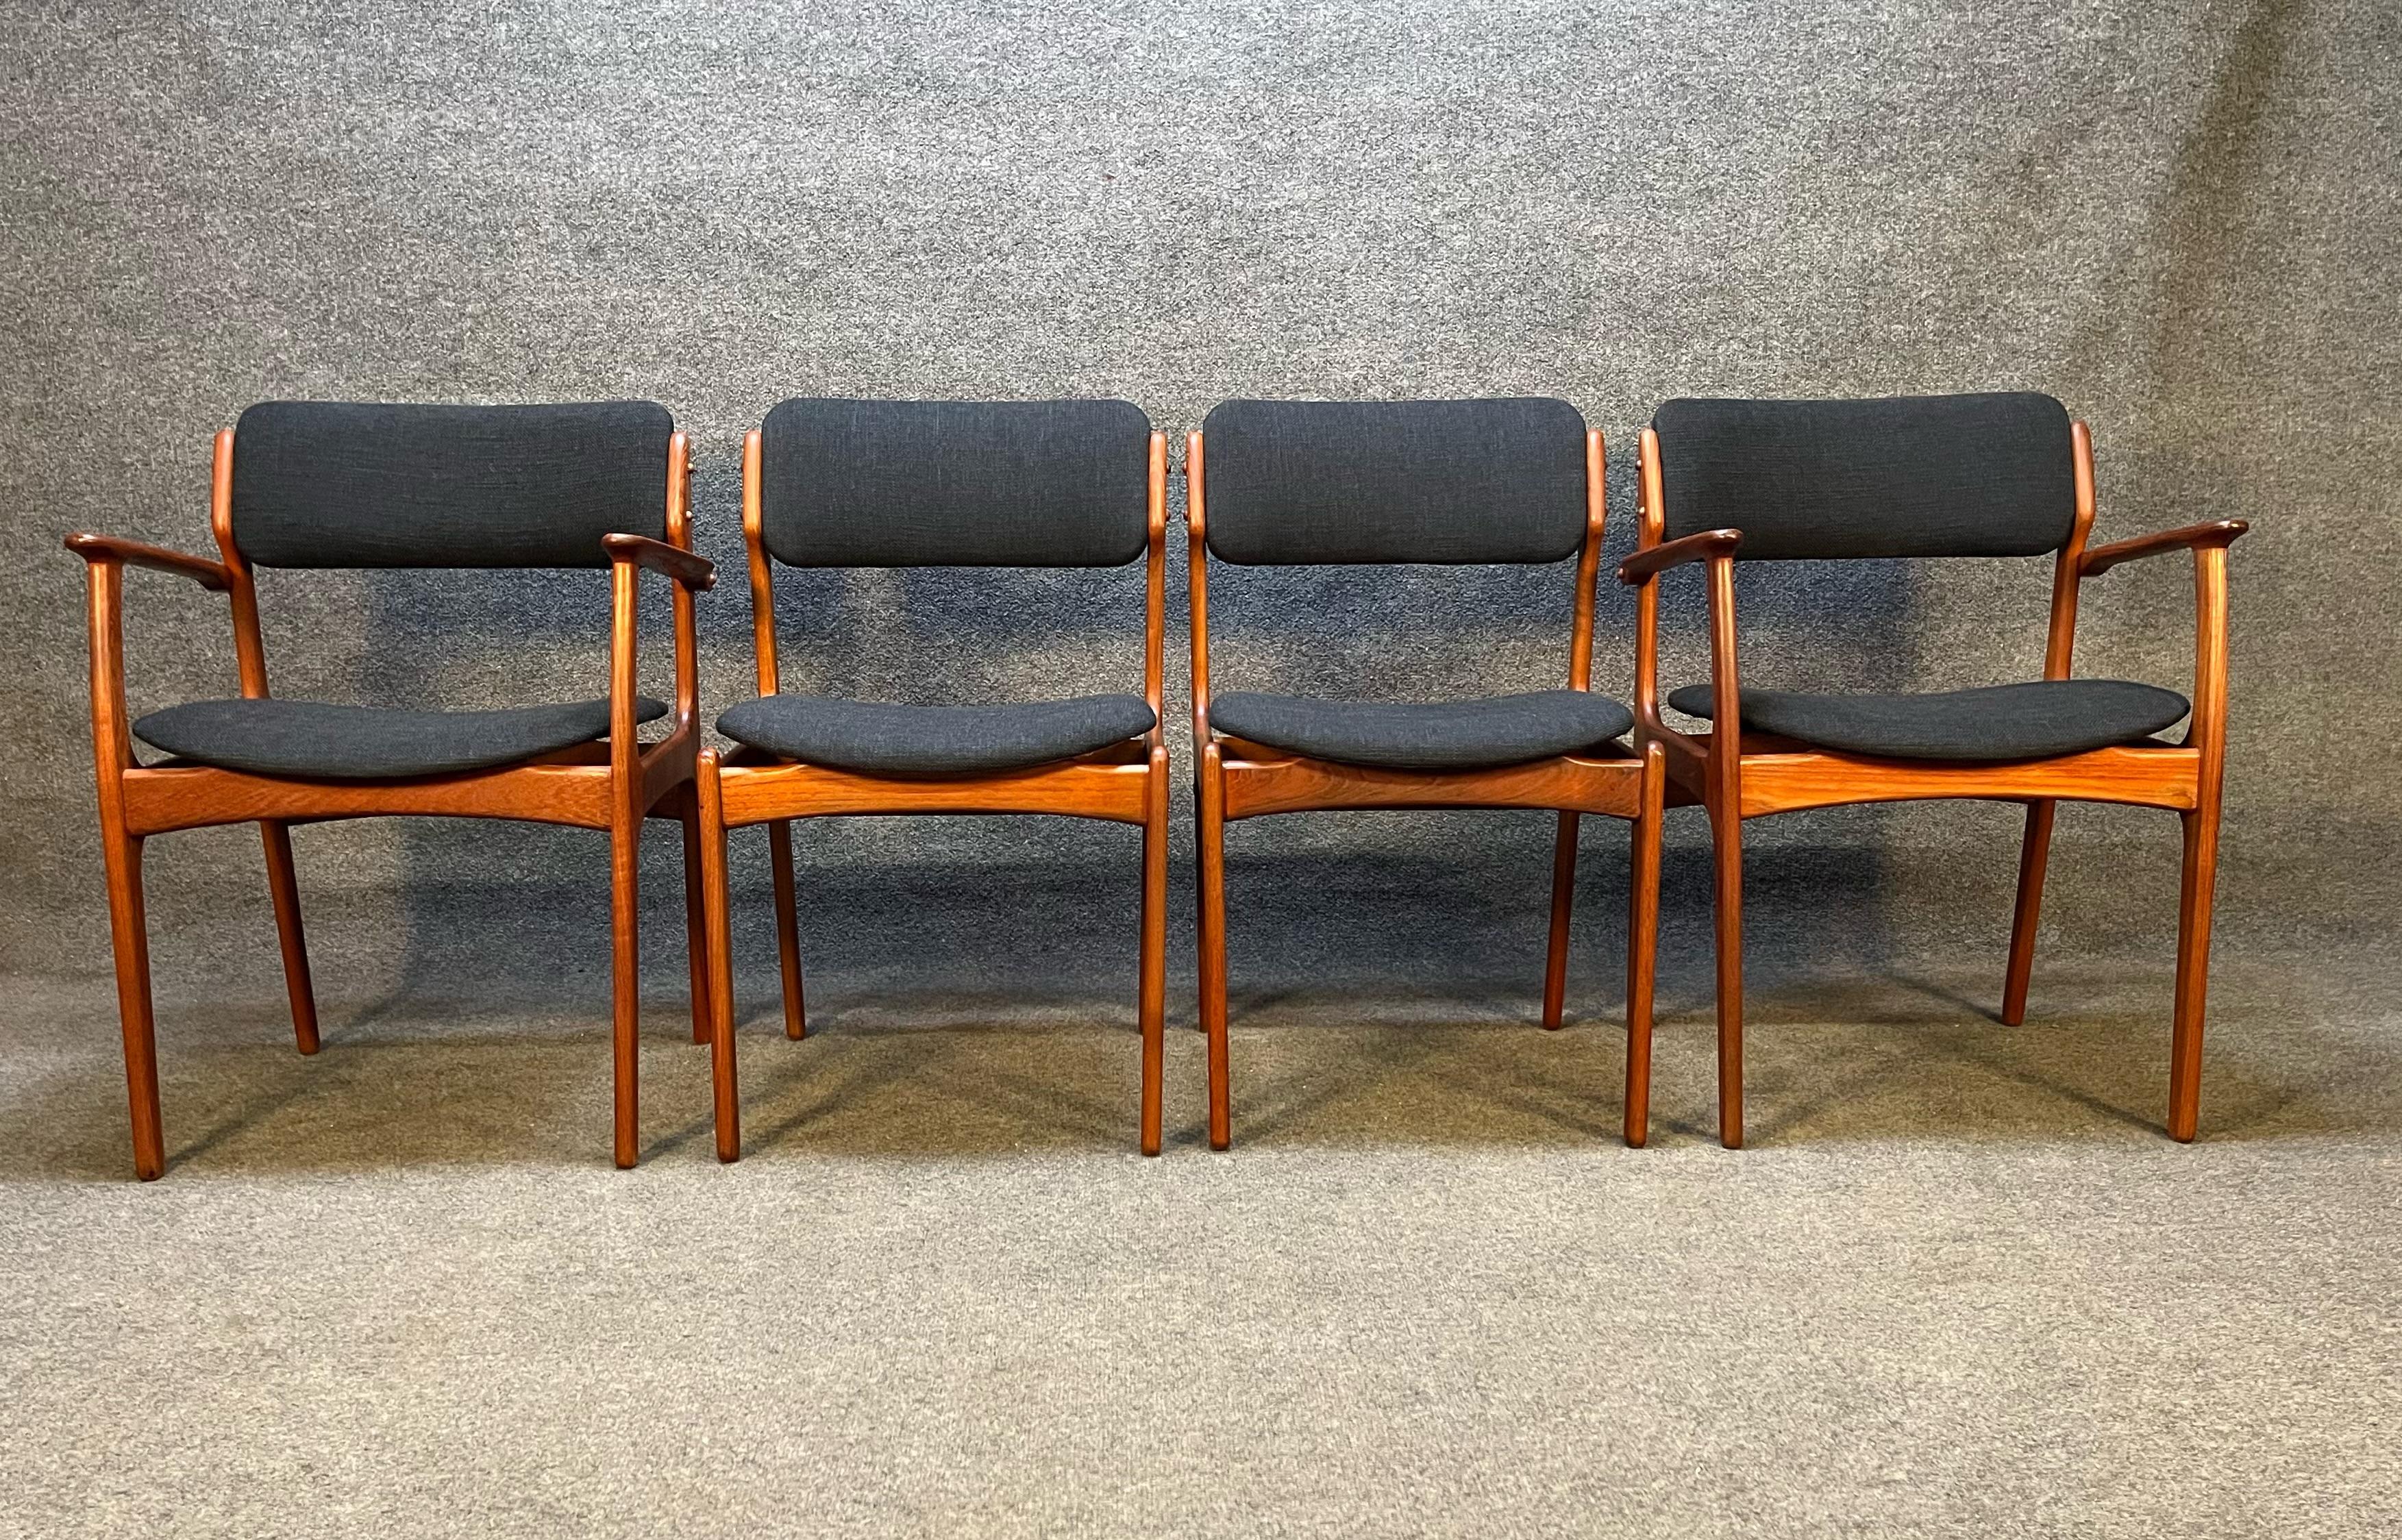 Voici un superbe ensemble de 4 chaises de salle à manger danoises en teck, conçues par Erik Buch, modèles 49 et 50. Ces chaises ont été entièrement remises à neuf et sont dotées d'un tissu et d'une mousse noirs anthracite flambant neufs. Cet